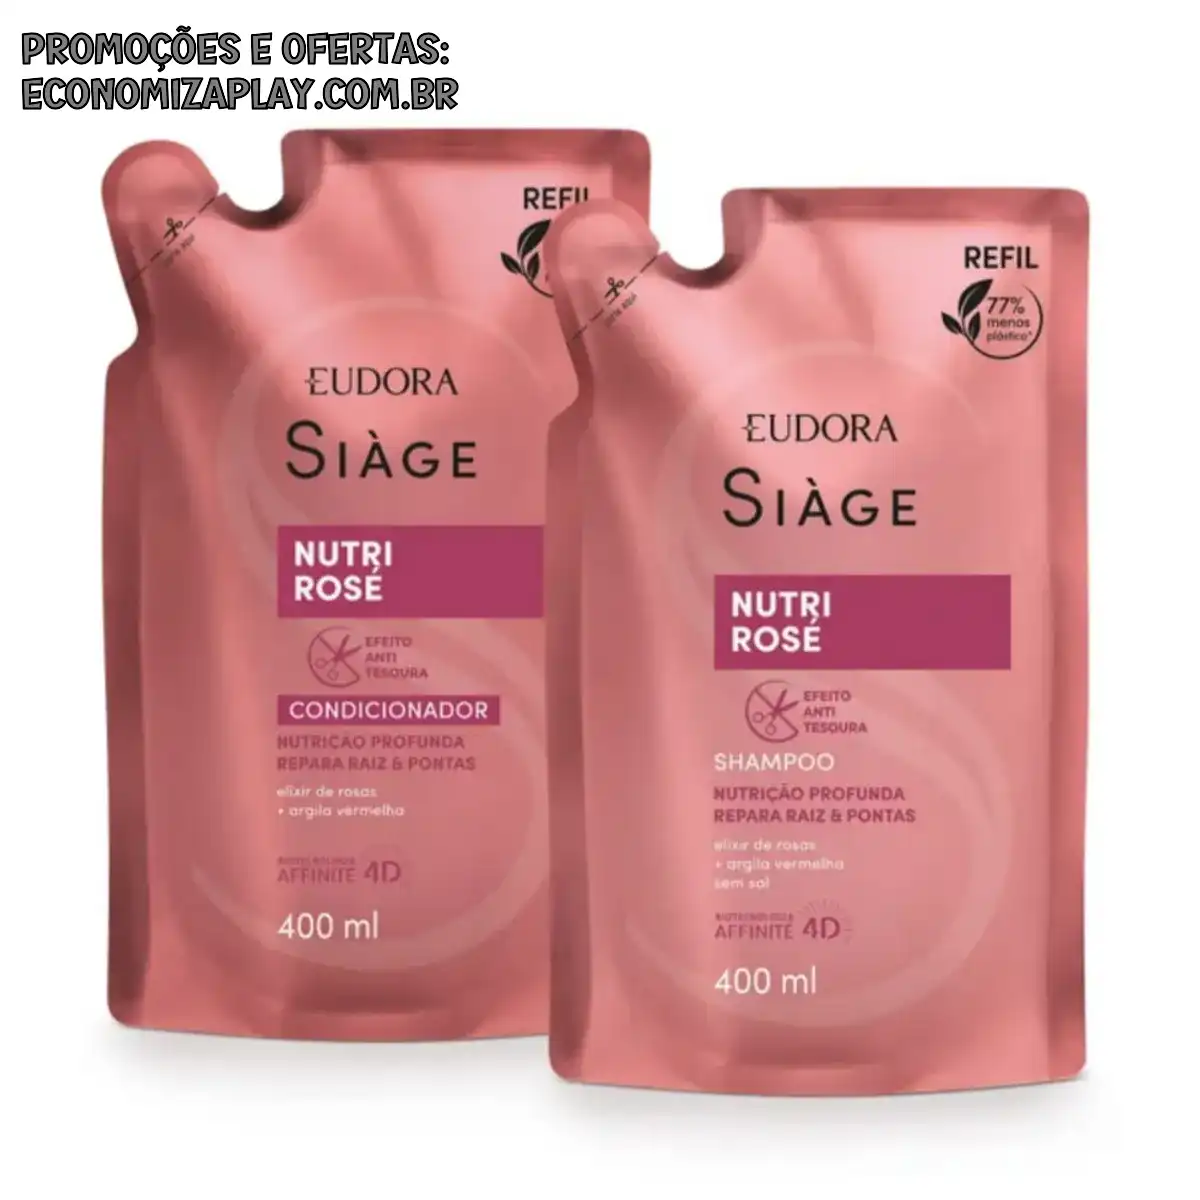 Eudora Siage Refil Shampoo Condicionador Nutri Rose 400ml